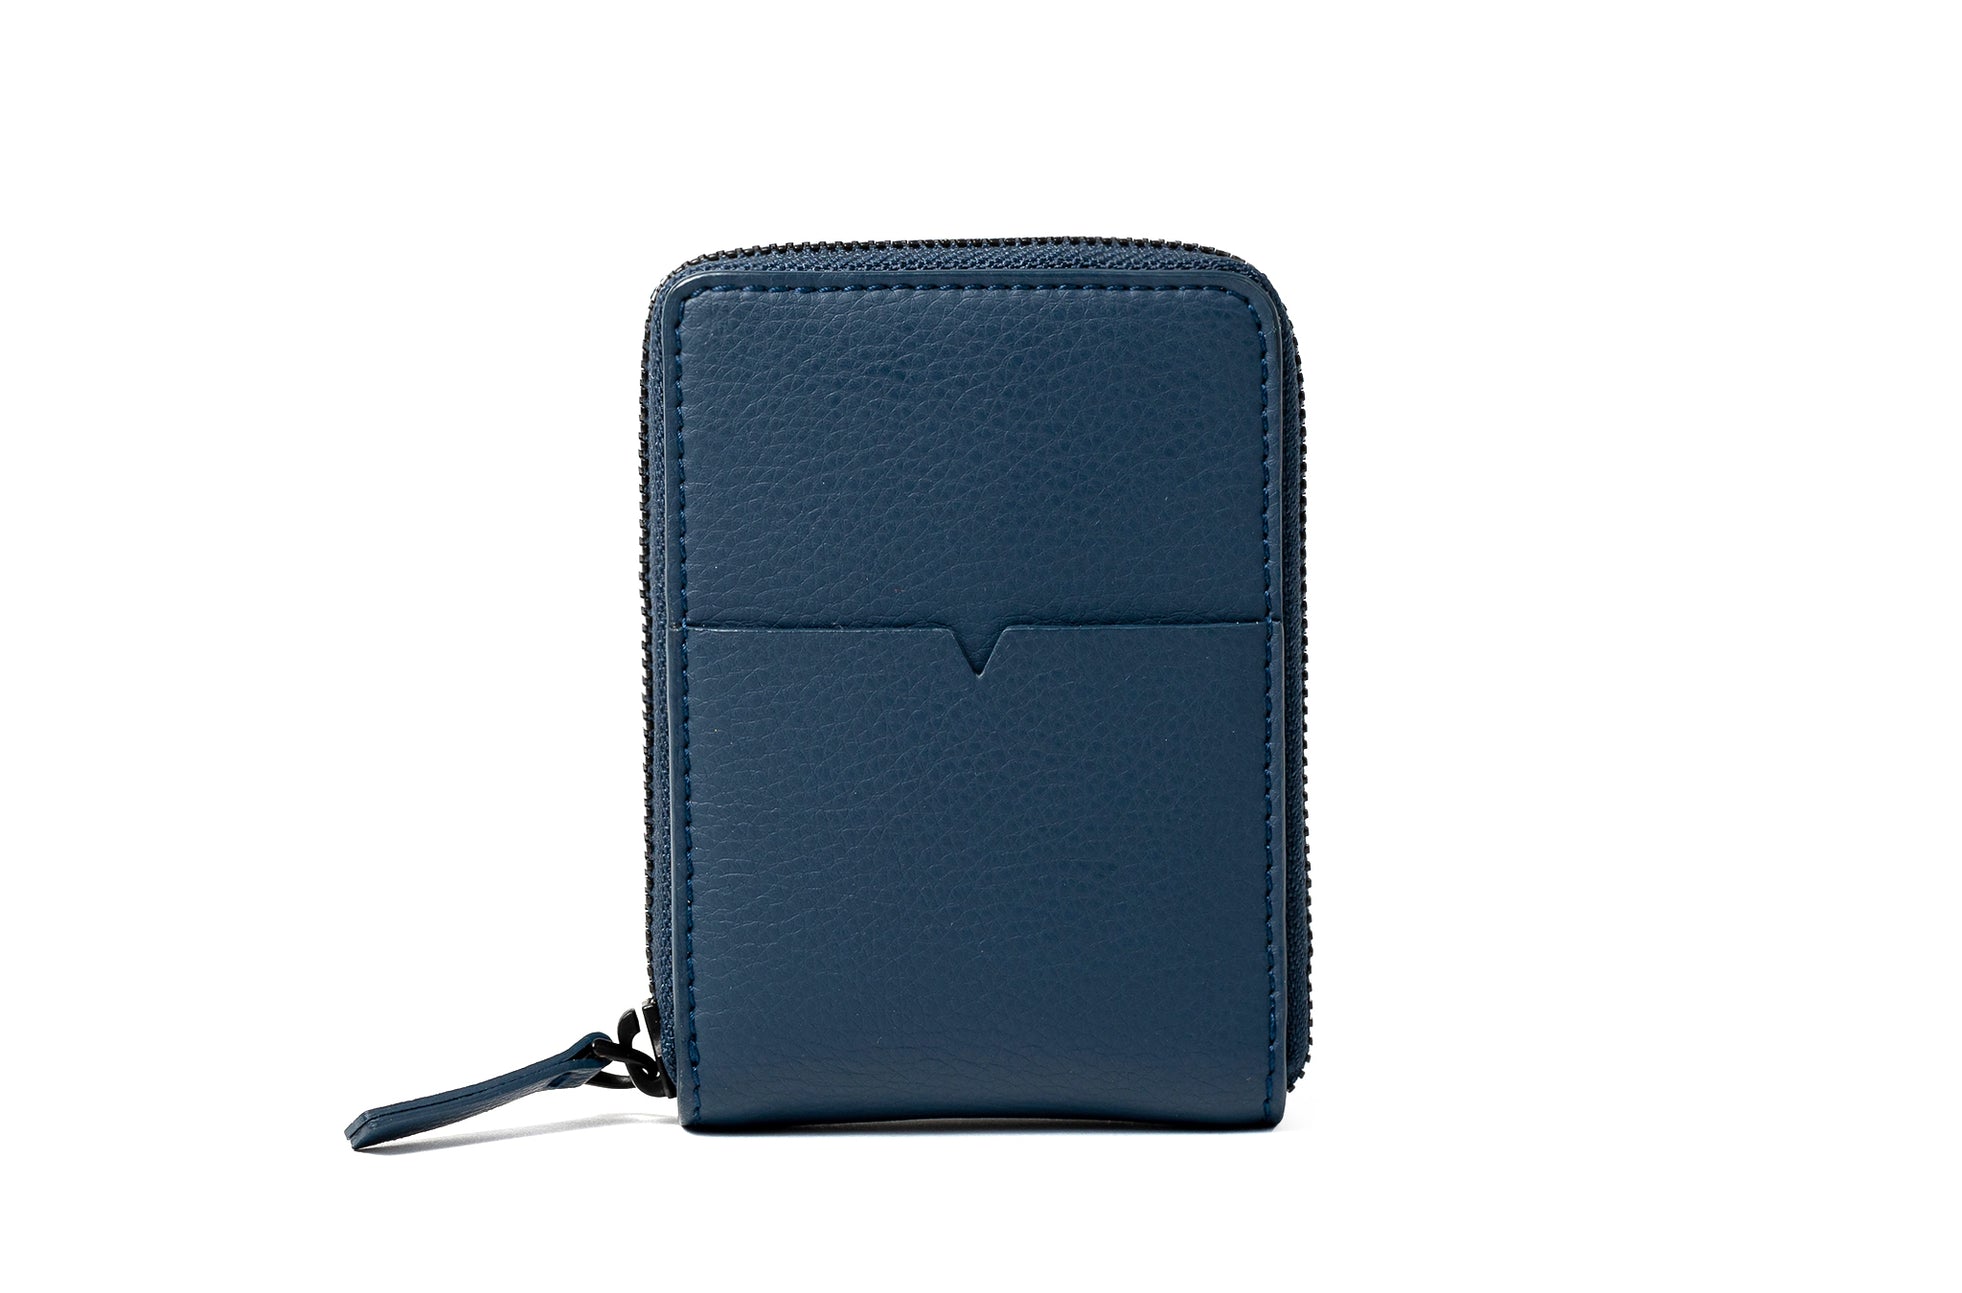 The Zip-Around Wallet in Technik-Leather in Denim image 1